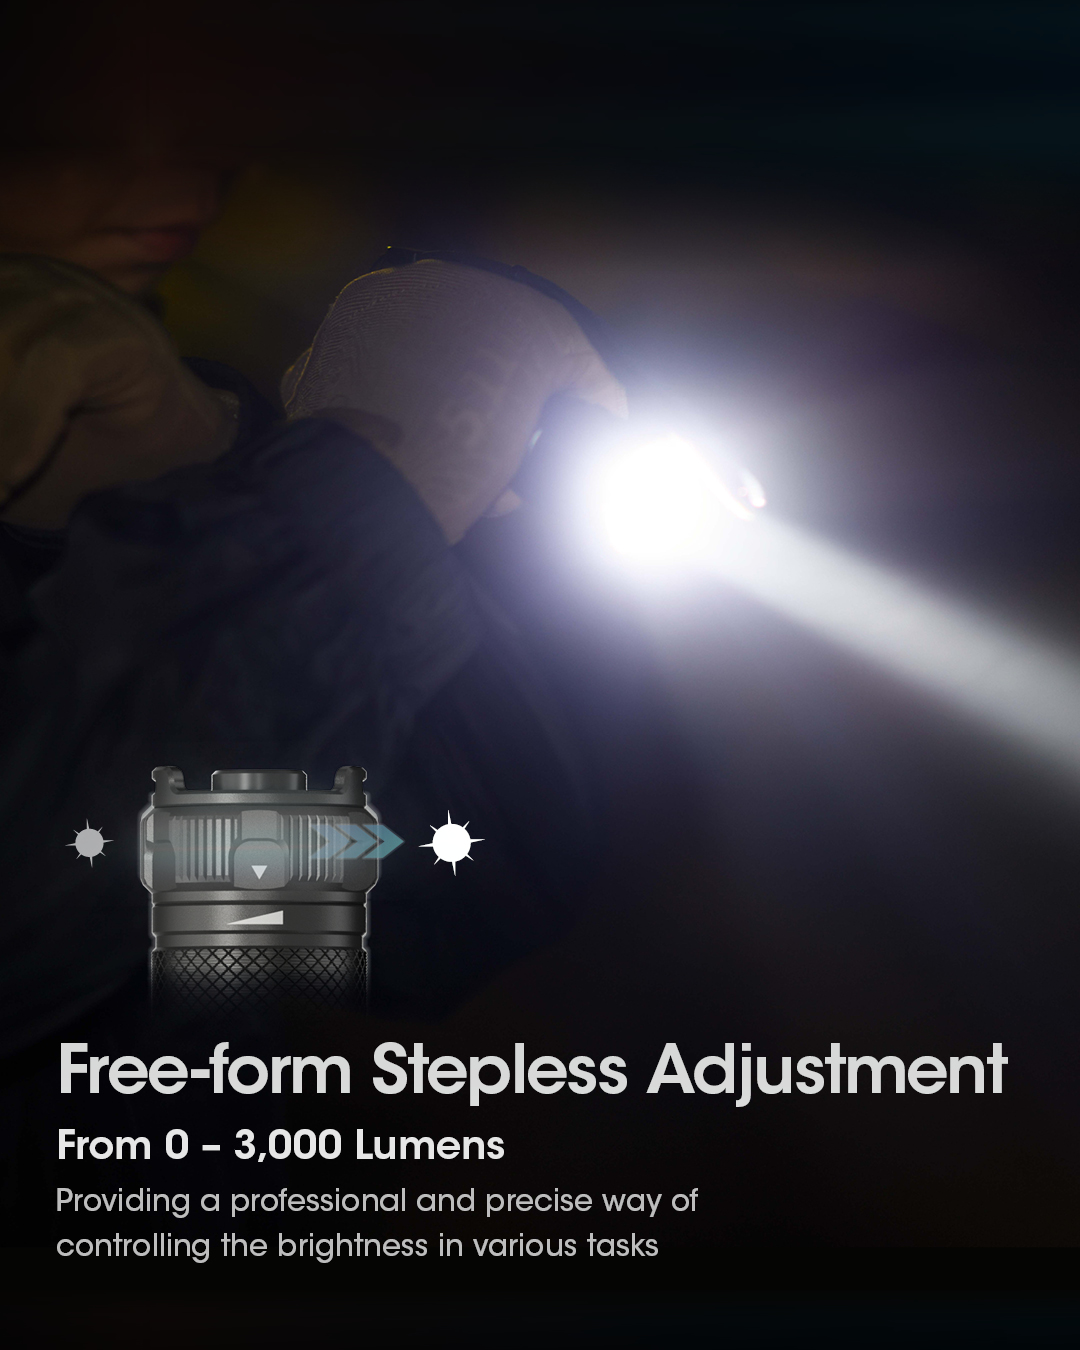 Acheter NiteCore SRT7i lampe de poche tactique - 3000 lumens-Noir?